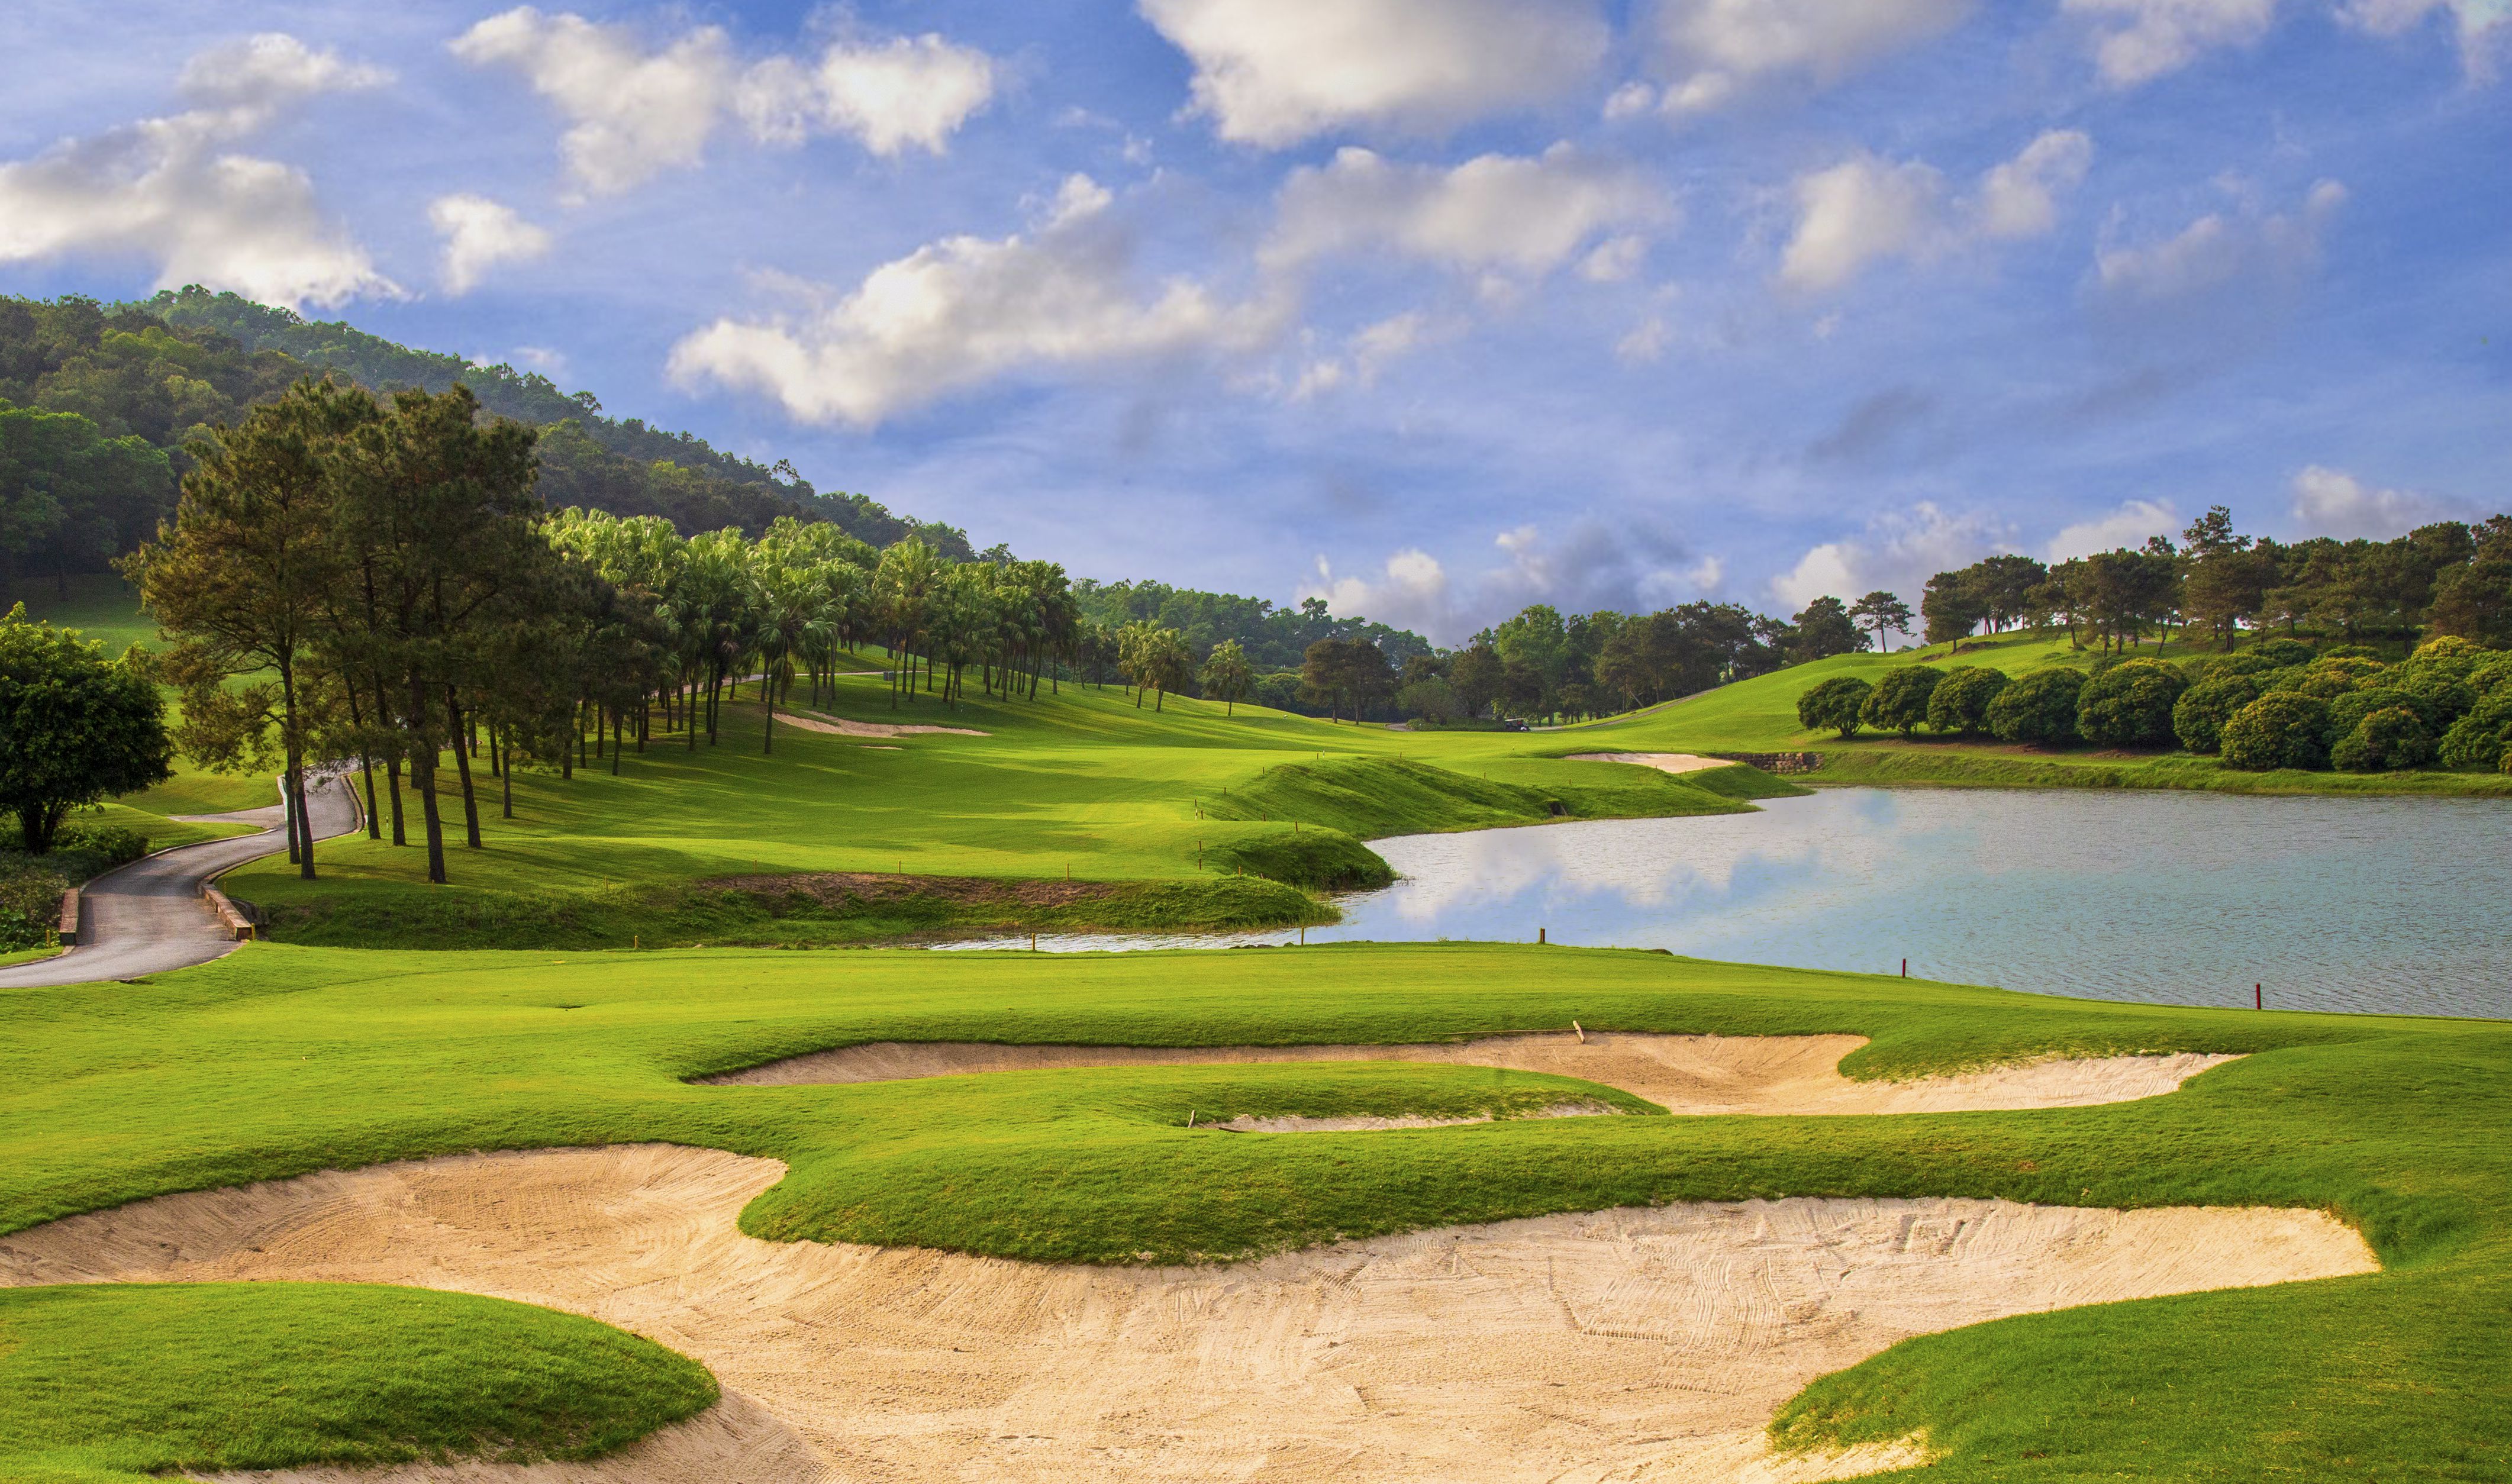 Sân golf Chí Linh có 36 lỗ golf đạt tiêu chuẩn Quốc tế.